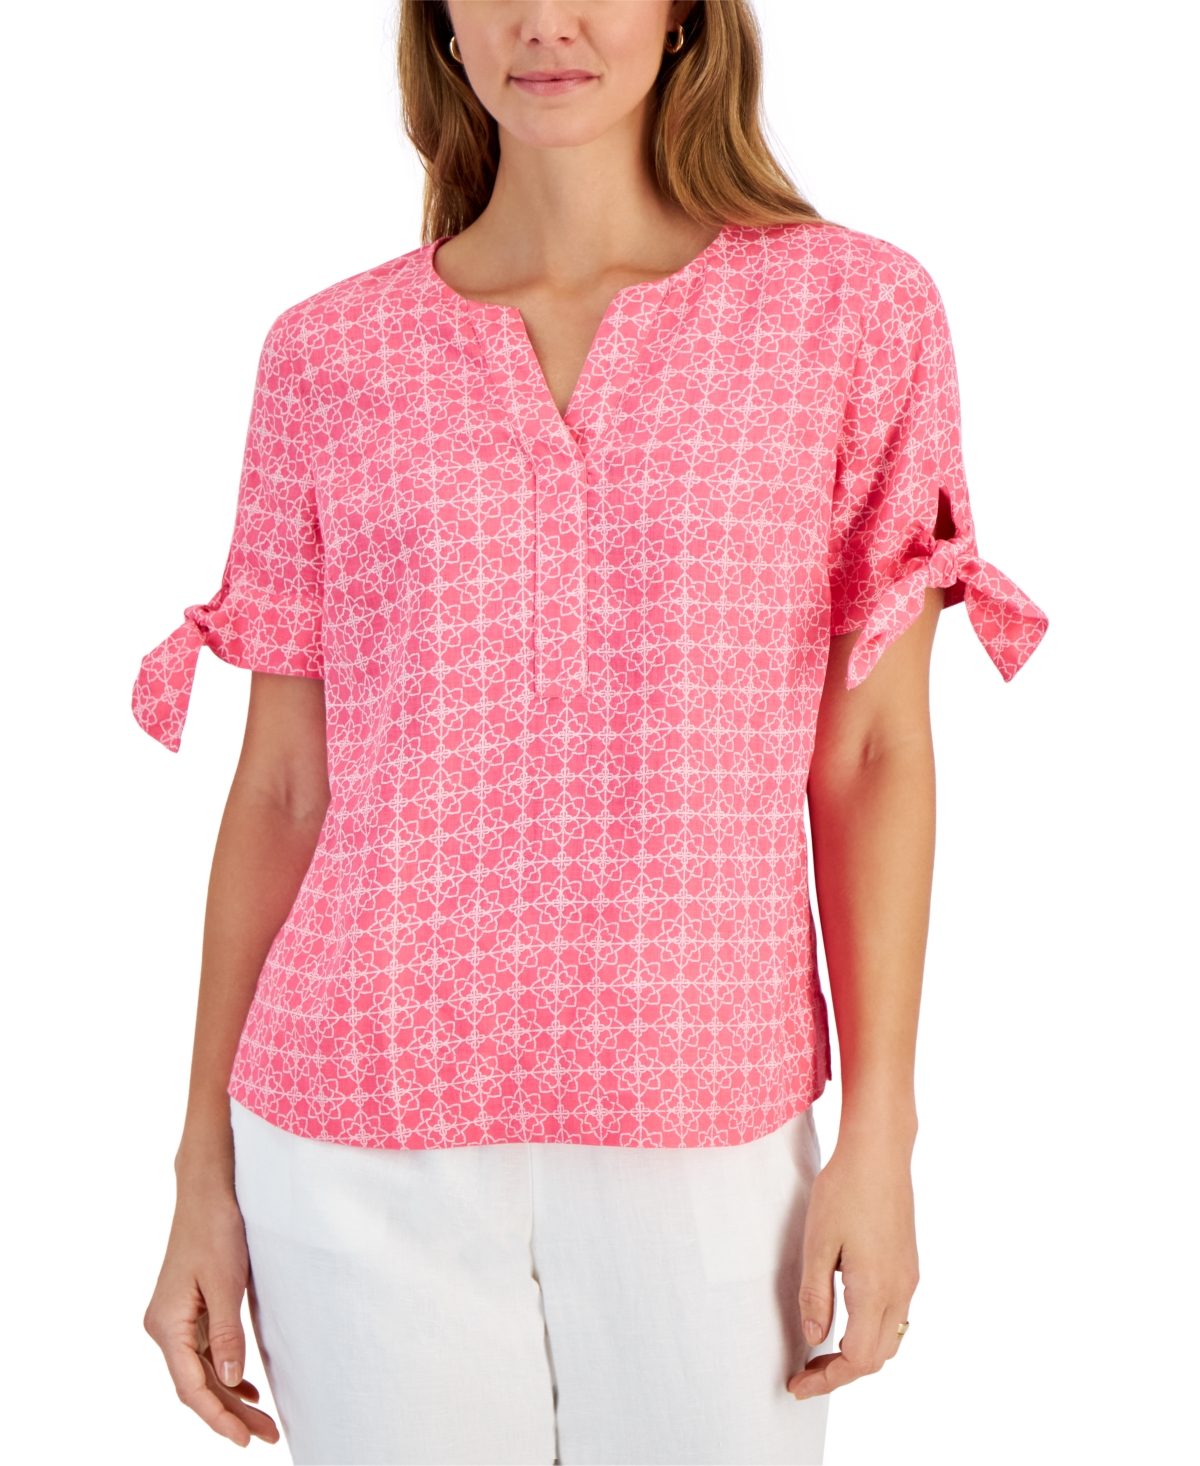 Women's 100% Linen Geo-Print Tie-Sleeve Top, Created for Macy's - Foxy Pink Combo